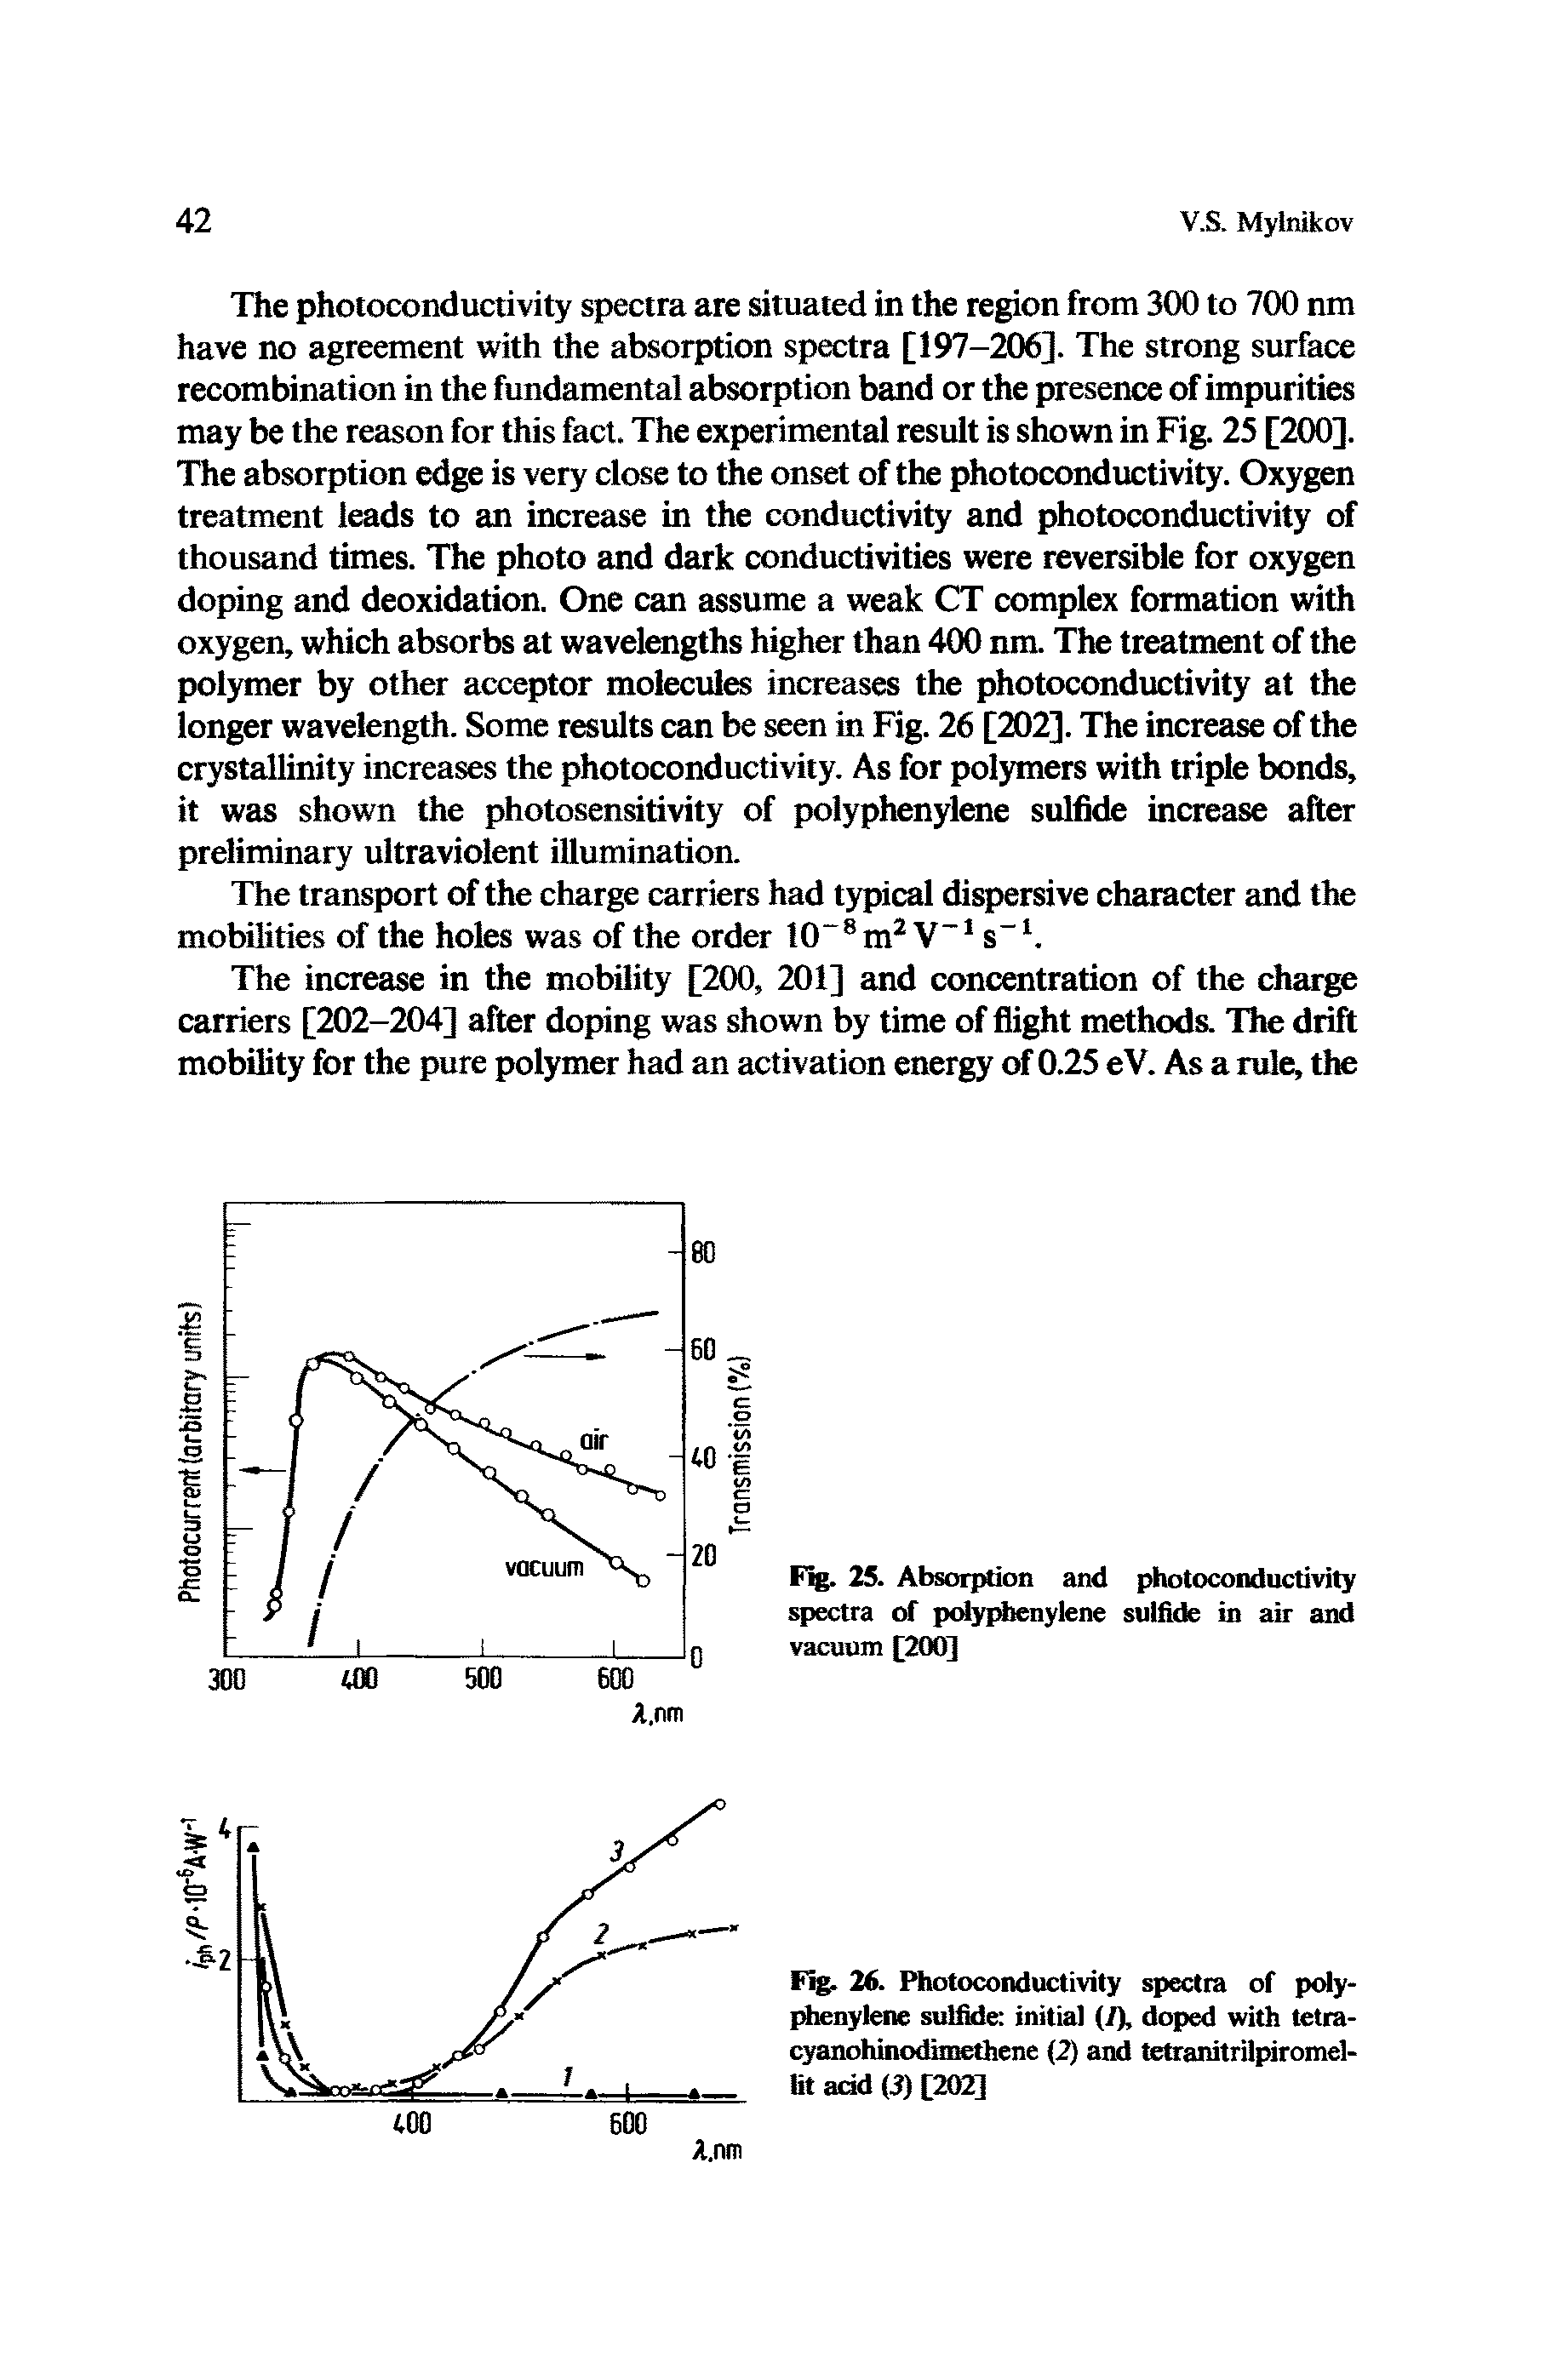 Fig. 26. Photoconductivity spectra of polyphenylene sulfide initial (/), doped with tetra-cyanohinodimethene (2) and tetranitrilpiromel-lit add (3) [202]...